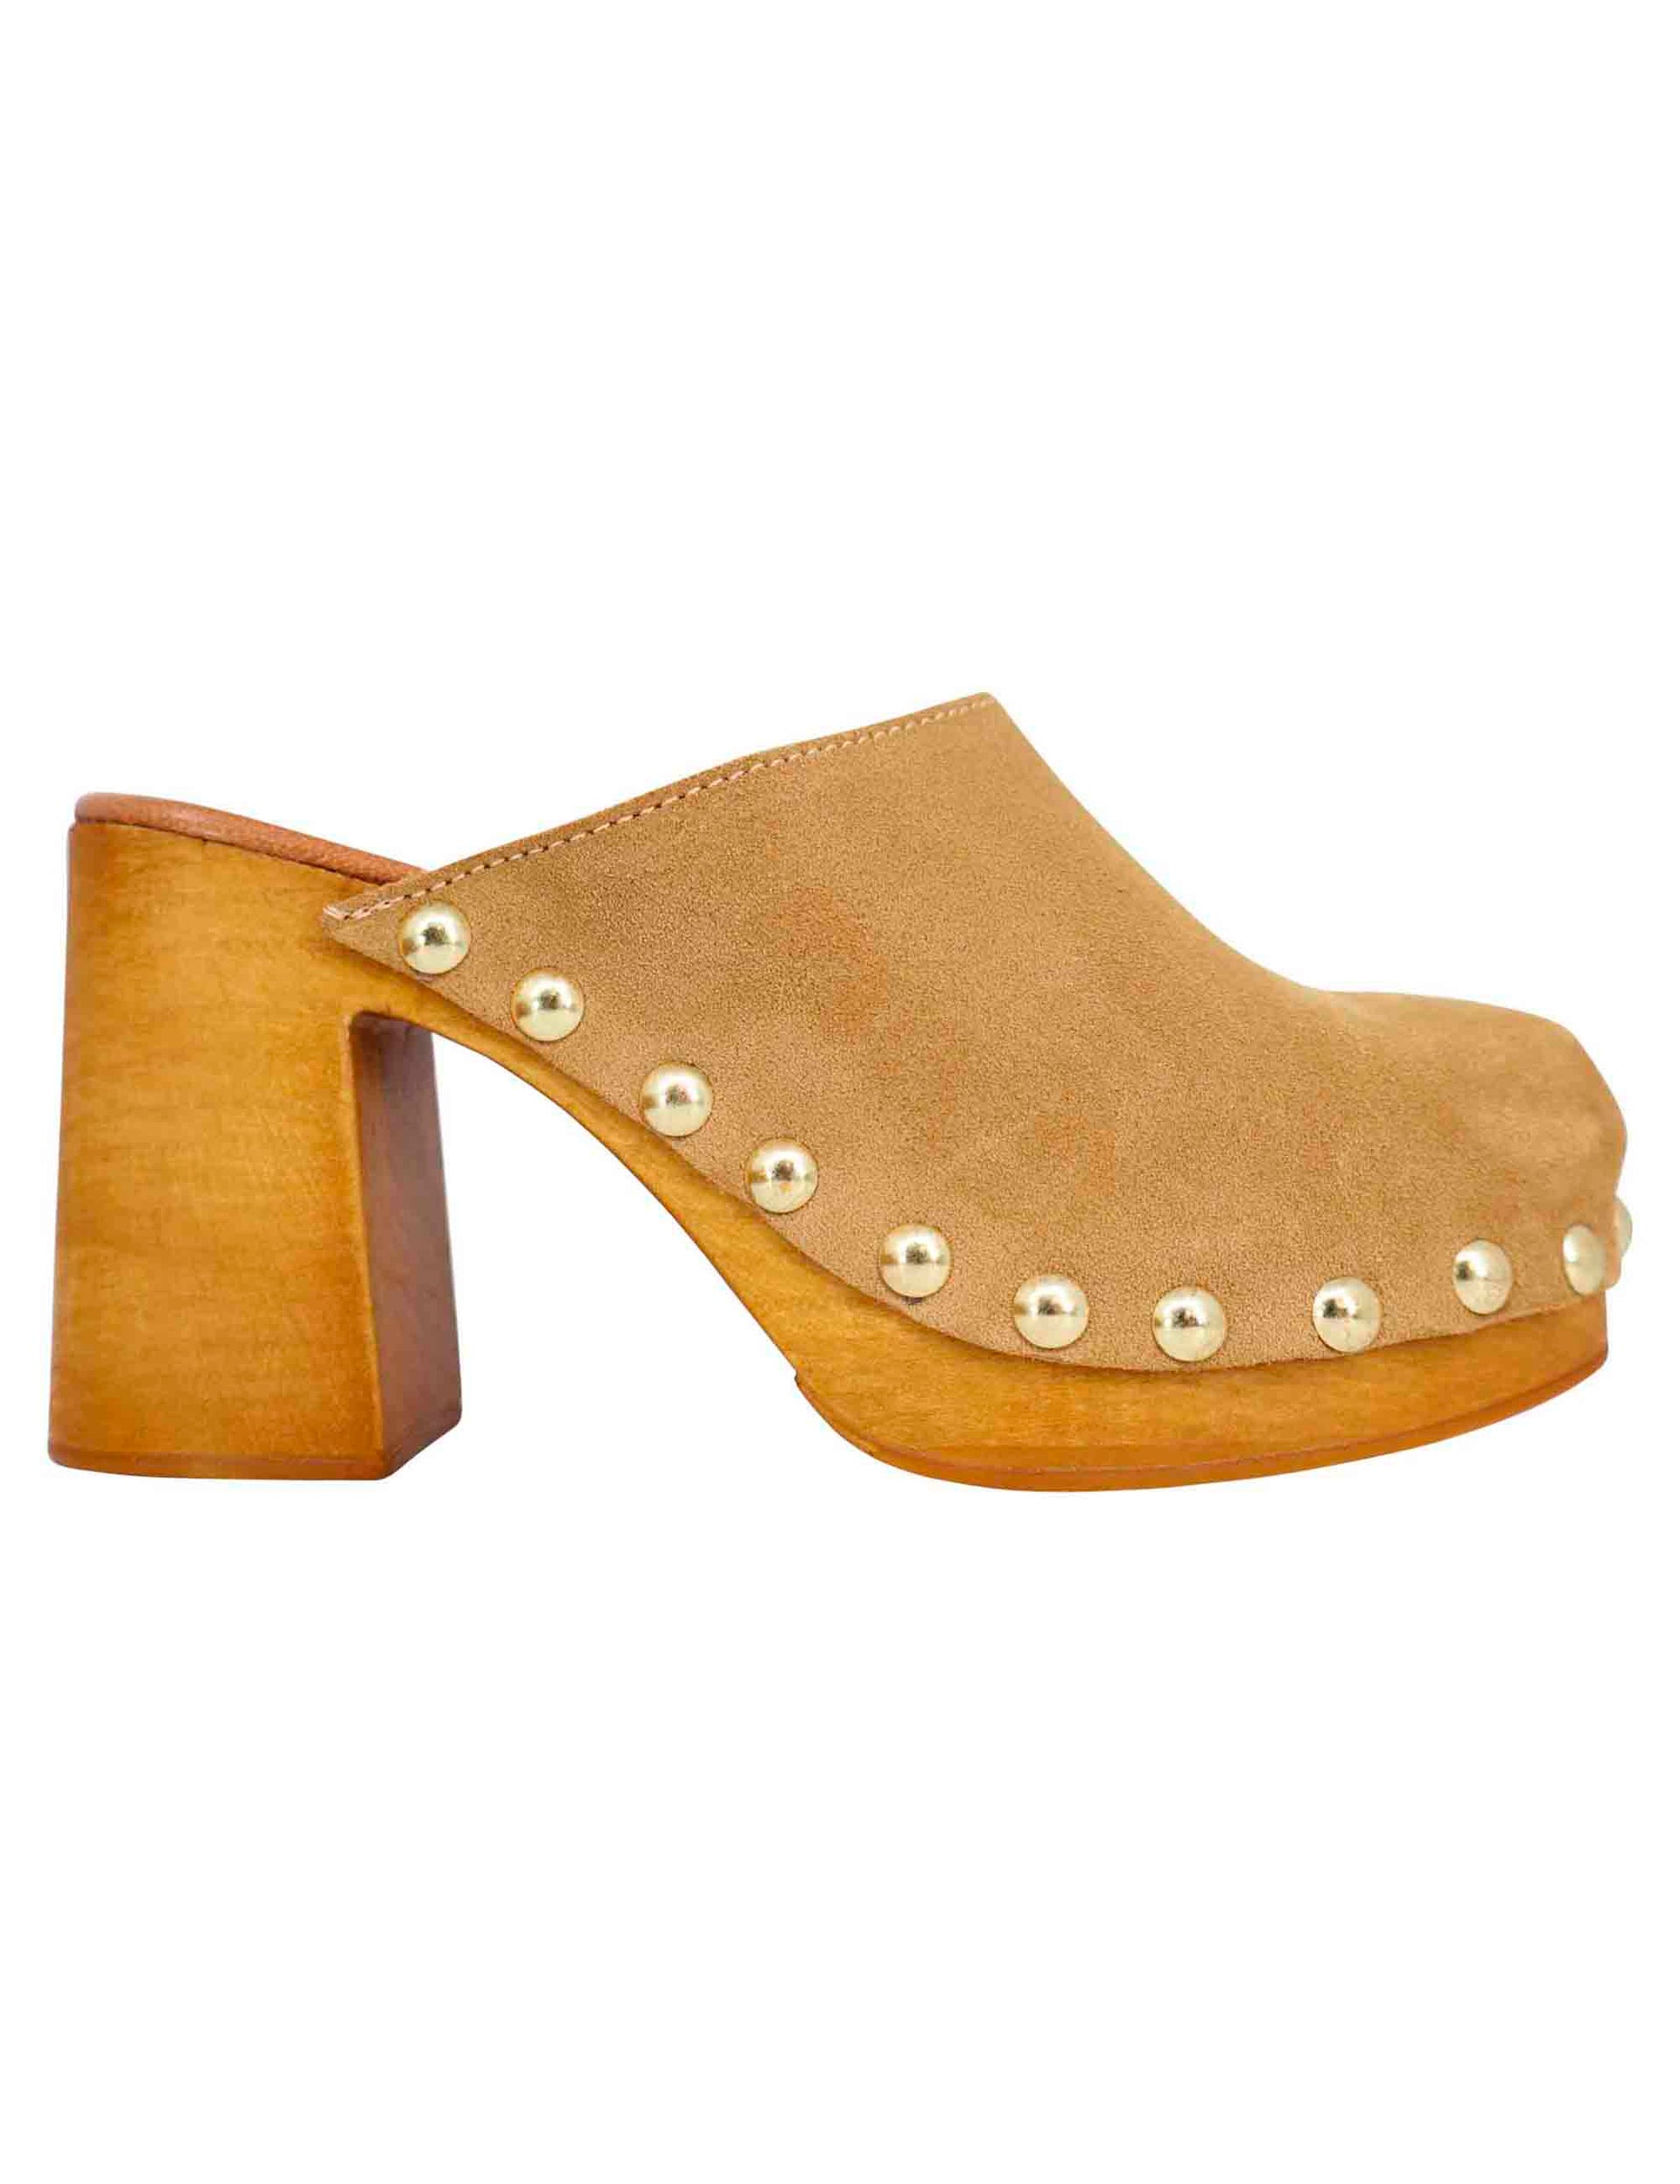 Women's clog sandals in beige suede with high heel